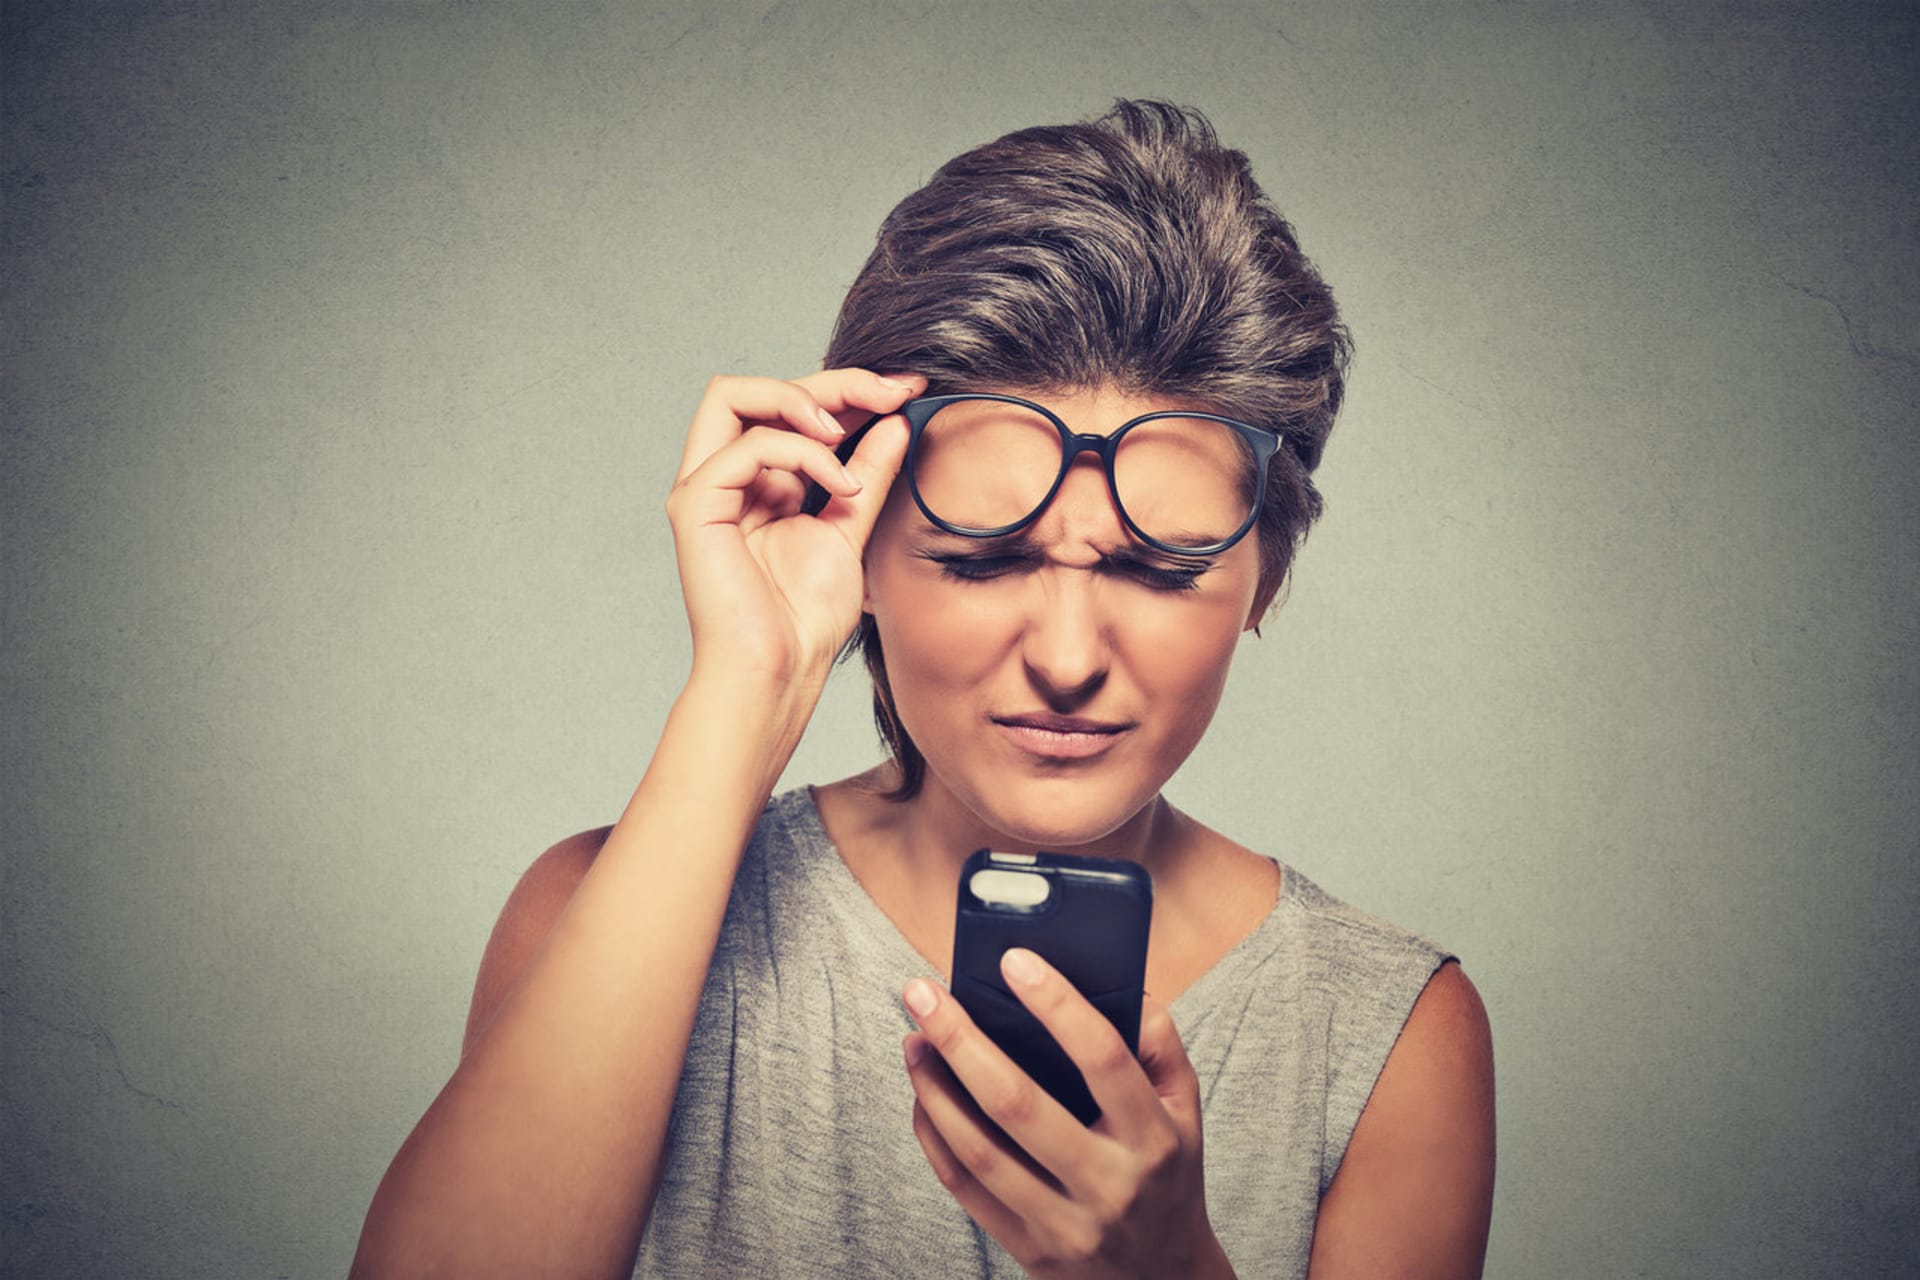 Čtou se vám špatně zprávy v mobilu? Možná trpíte vetchozrakostí